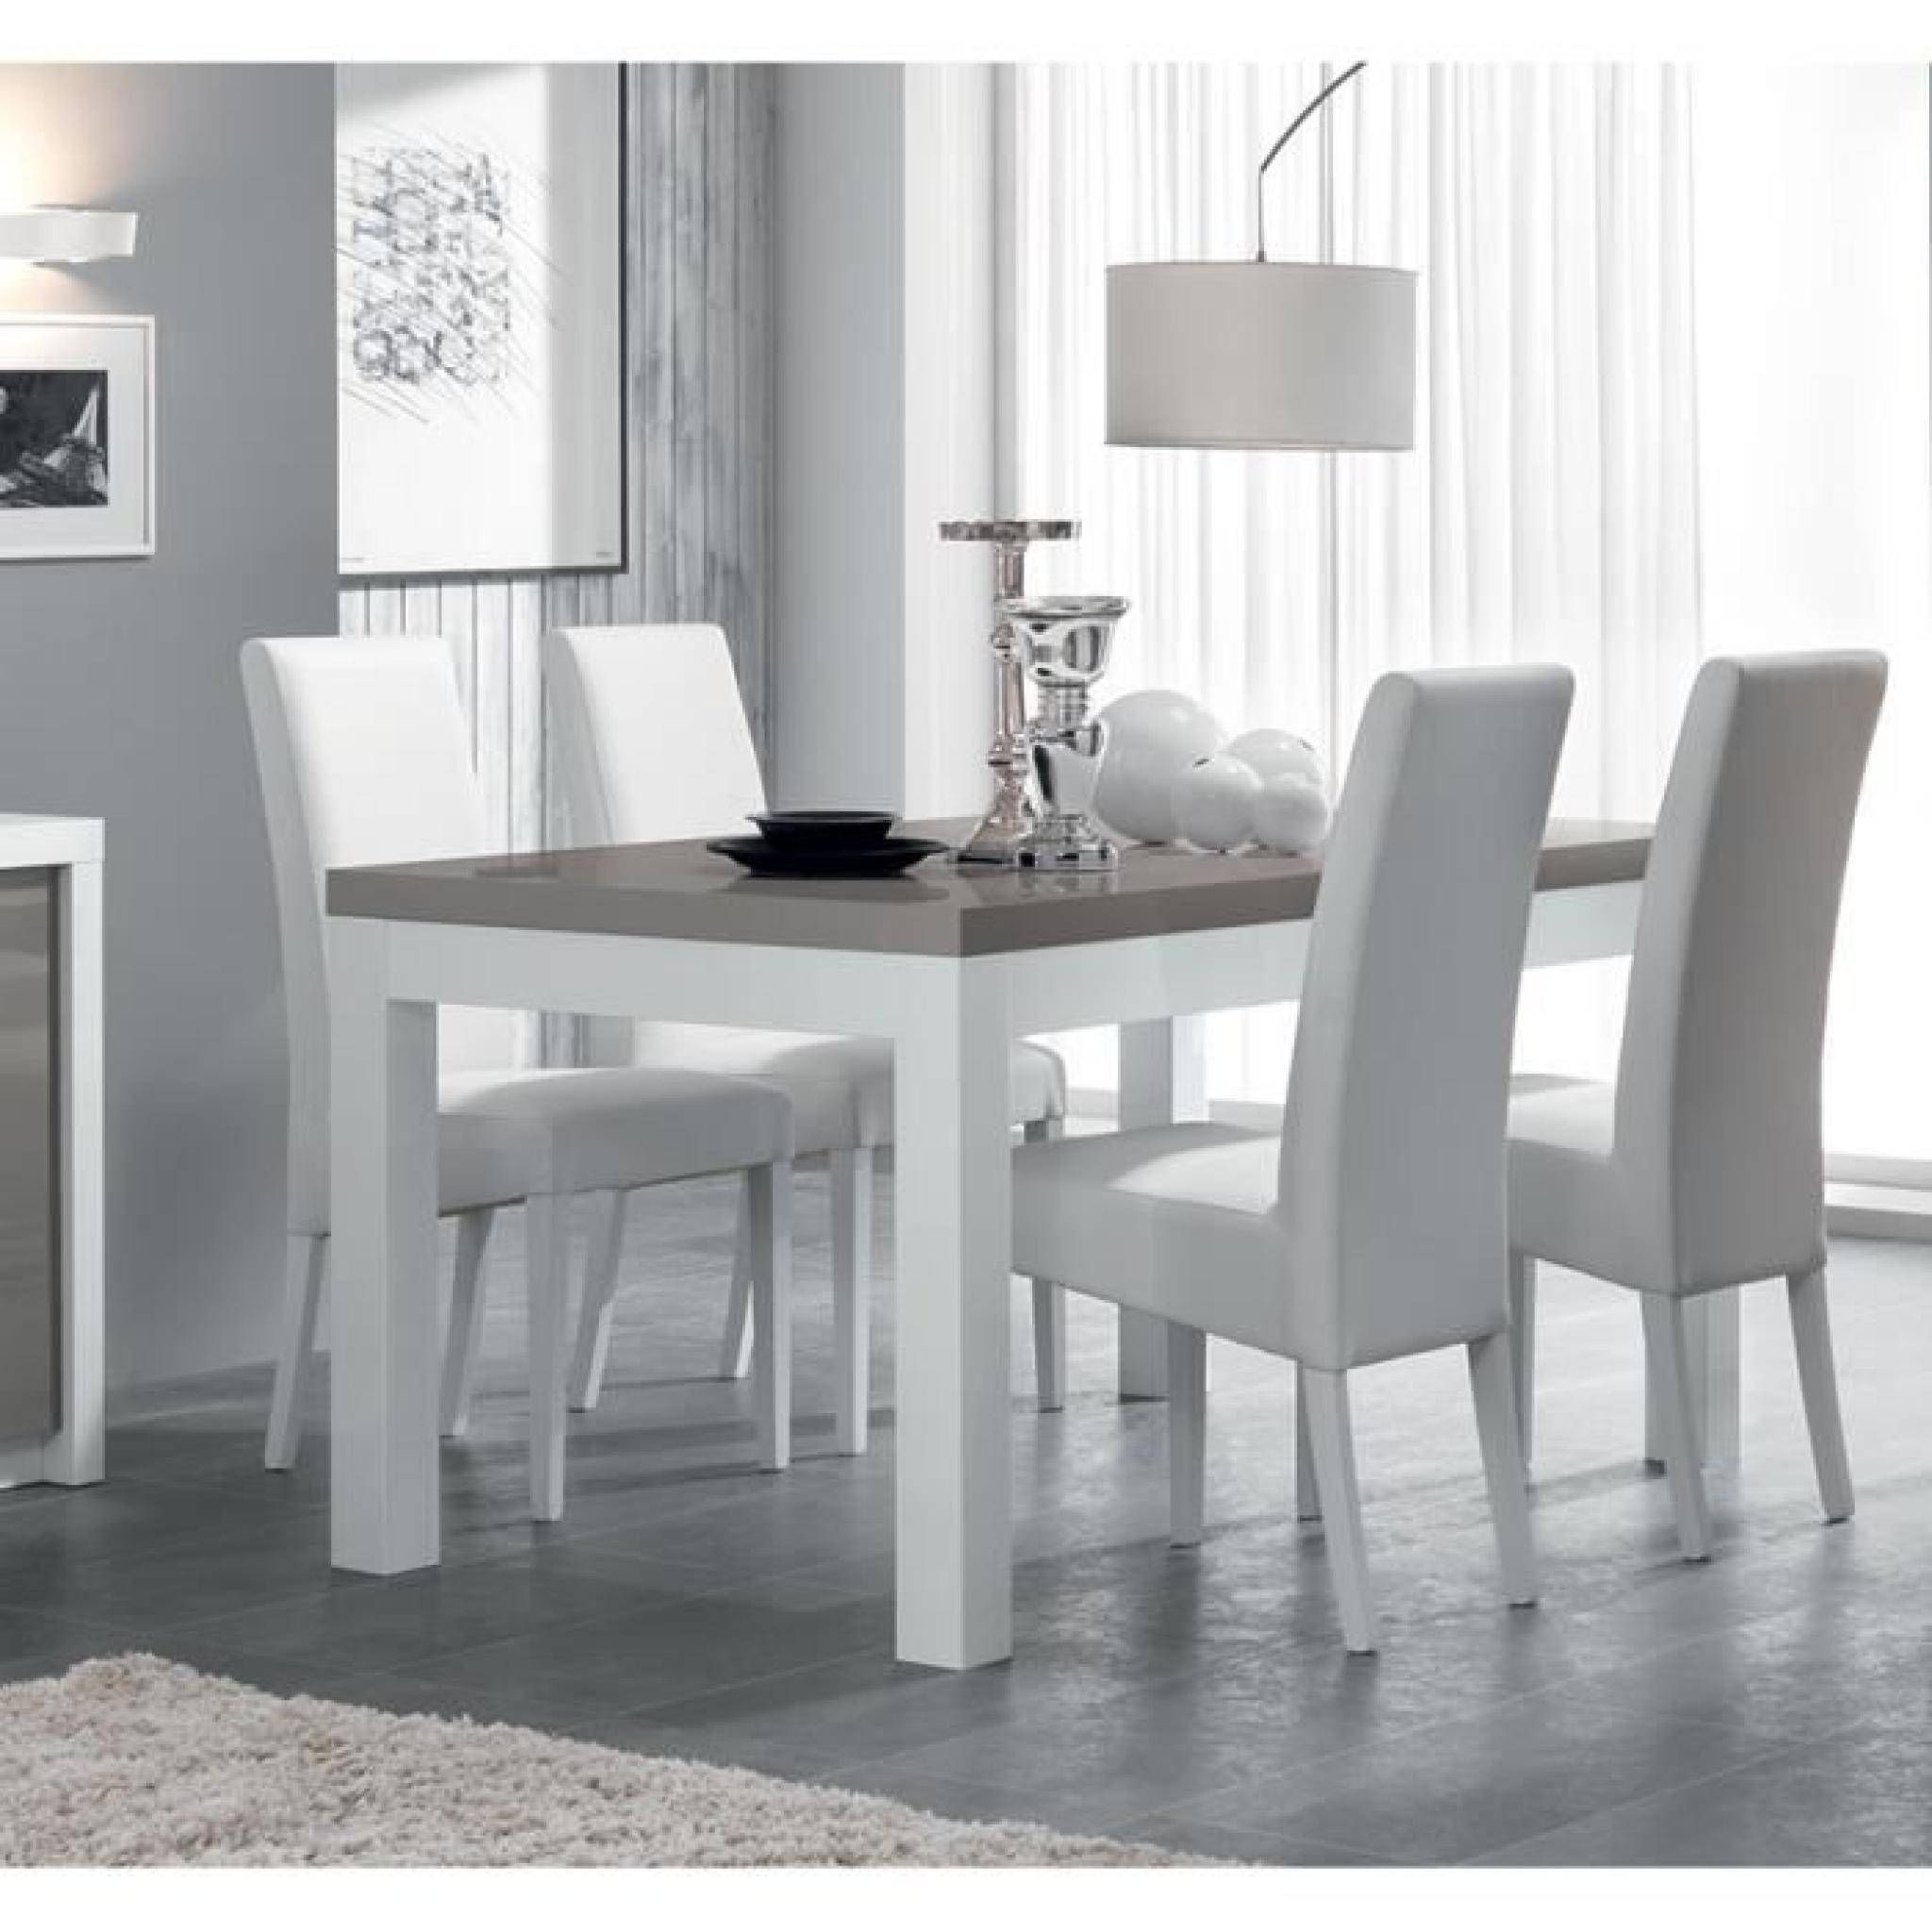 Table à manger blanc et gris laqué design LYDIA L 160 cm